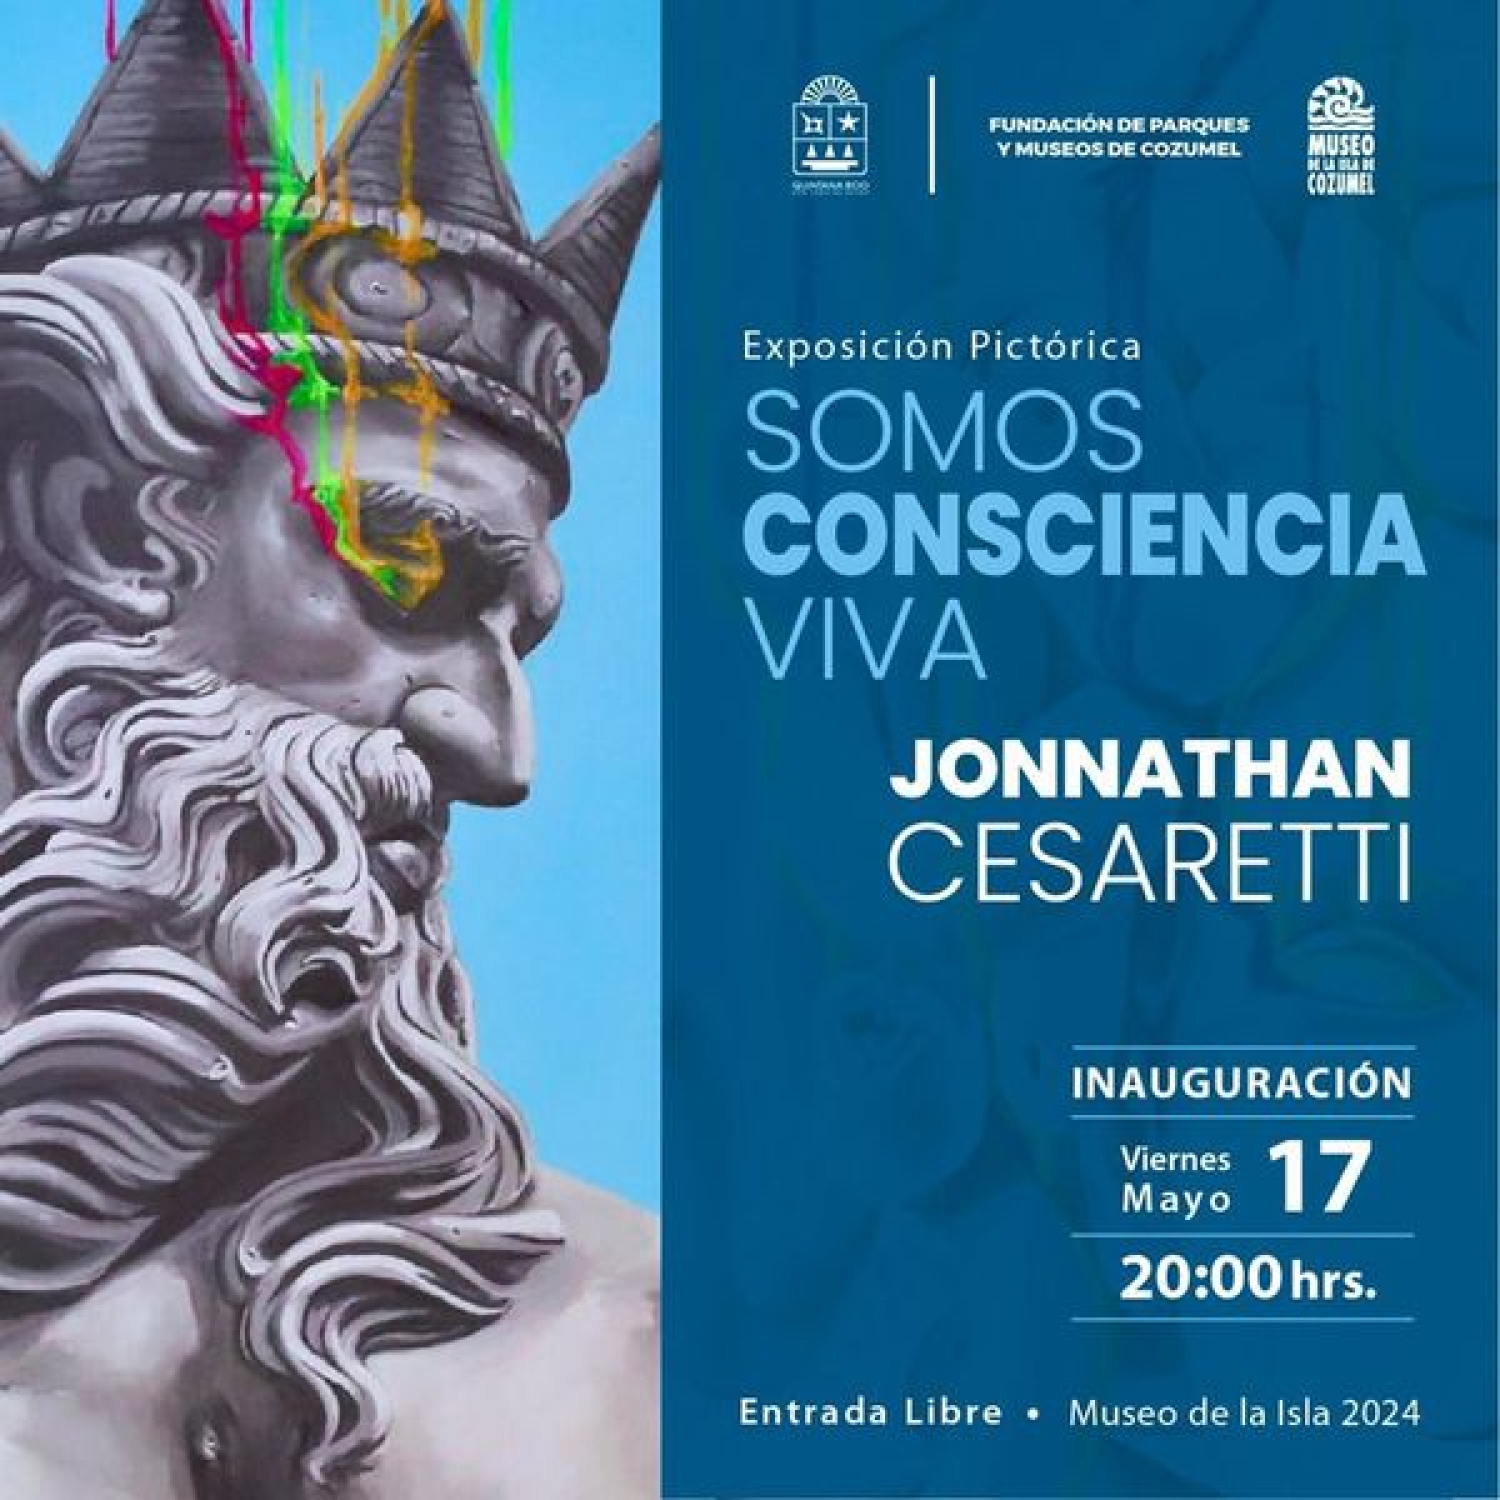 Presentarán la exposición “Somos Consciencia Viva”, del artista Jonnathan Cesaretti